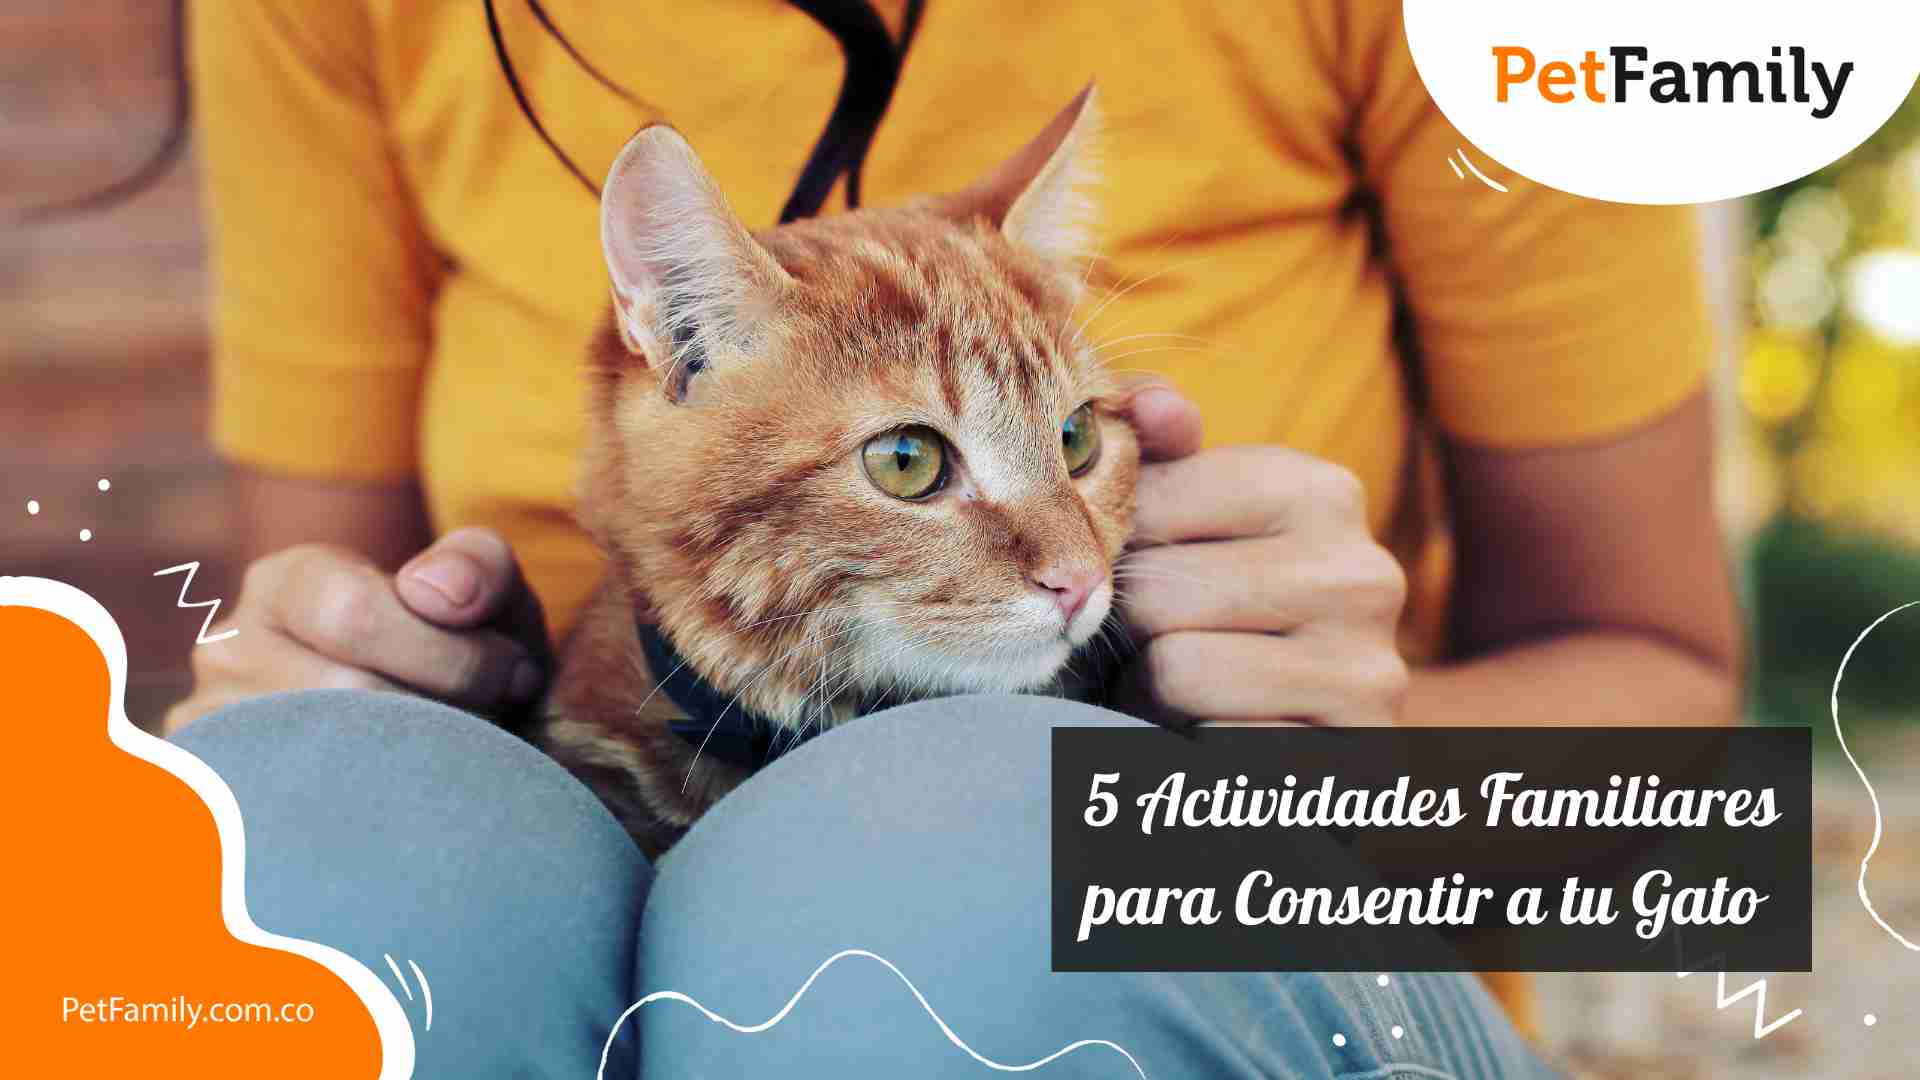 5 Actividades Familiares para Consentir a tu Gato